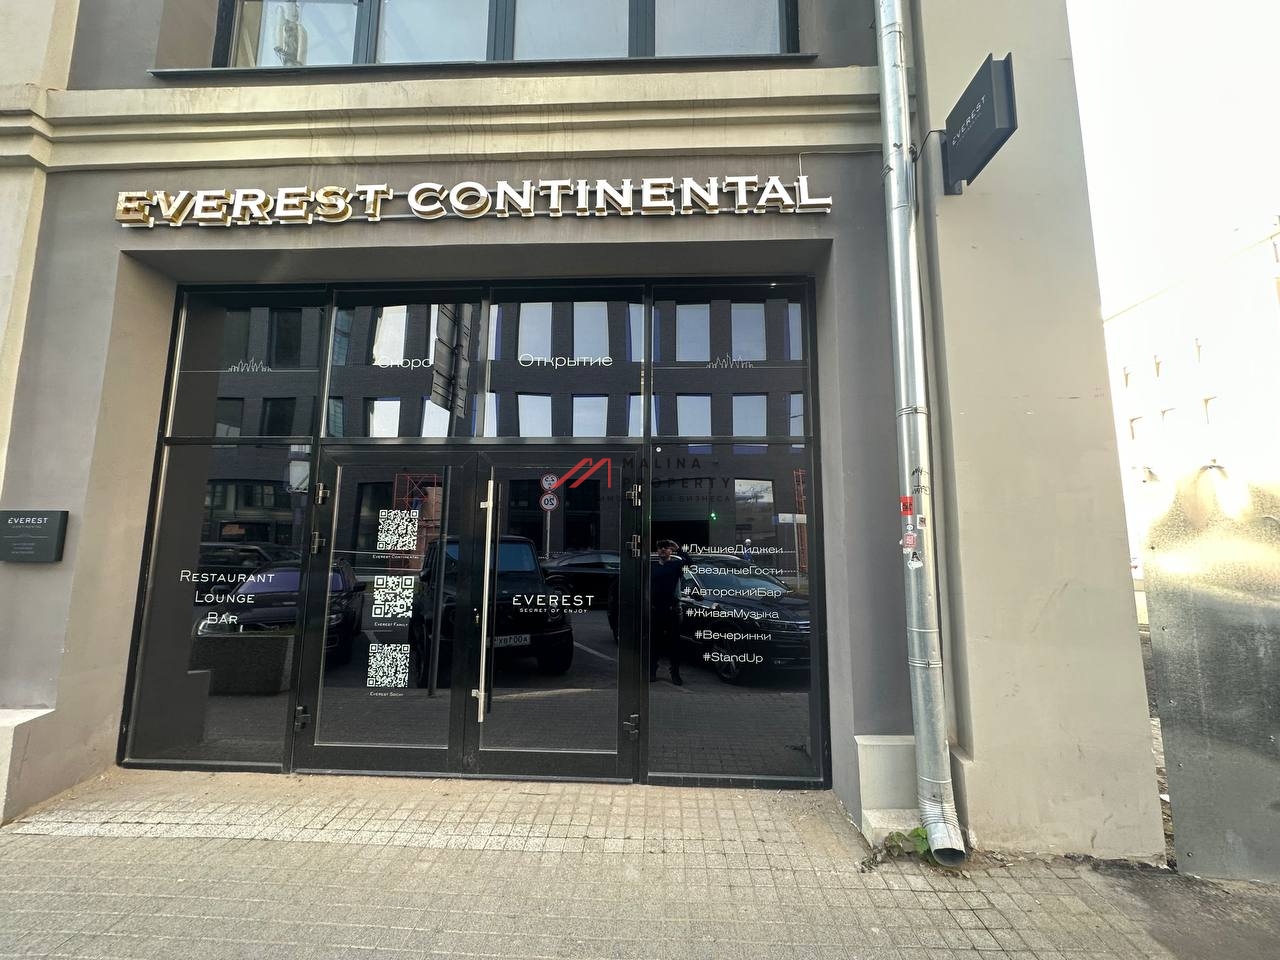 Продажа помещения с рестораном Everest